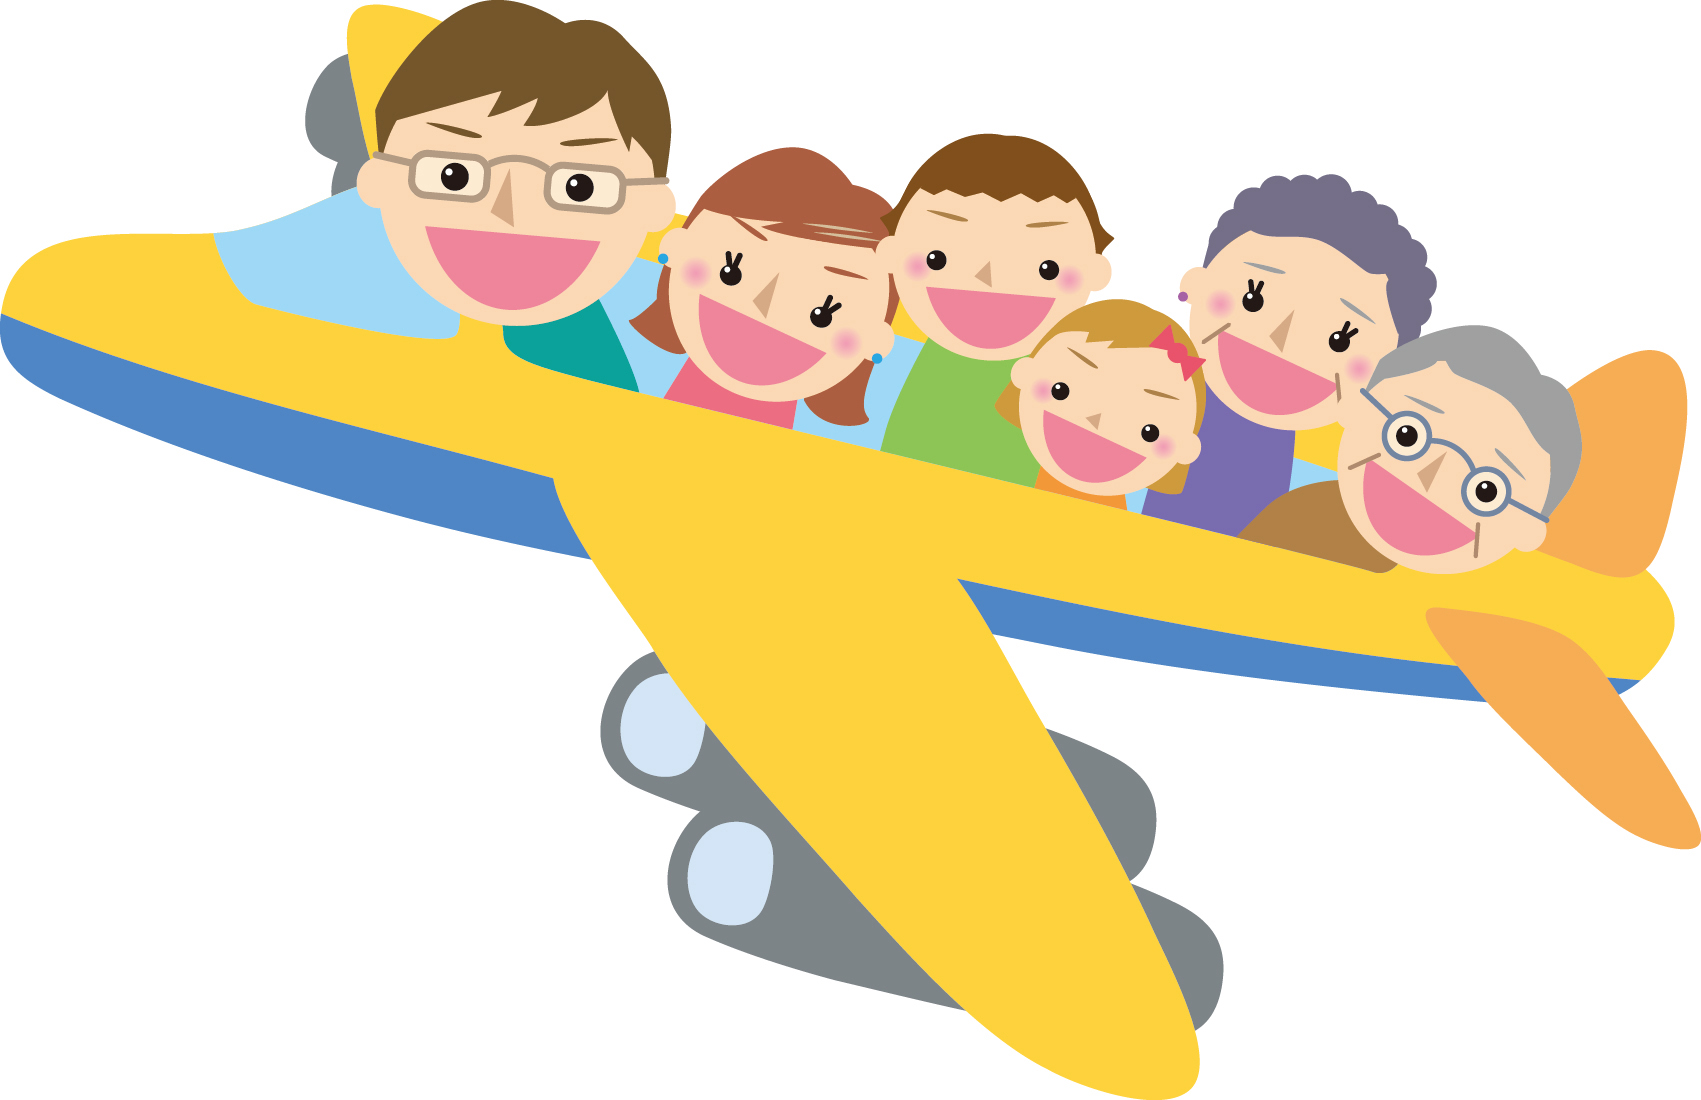 子連れで飛行機は不安 機内での子供の暇つぶし対策14案を紹介